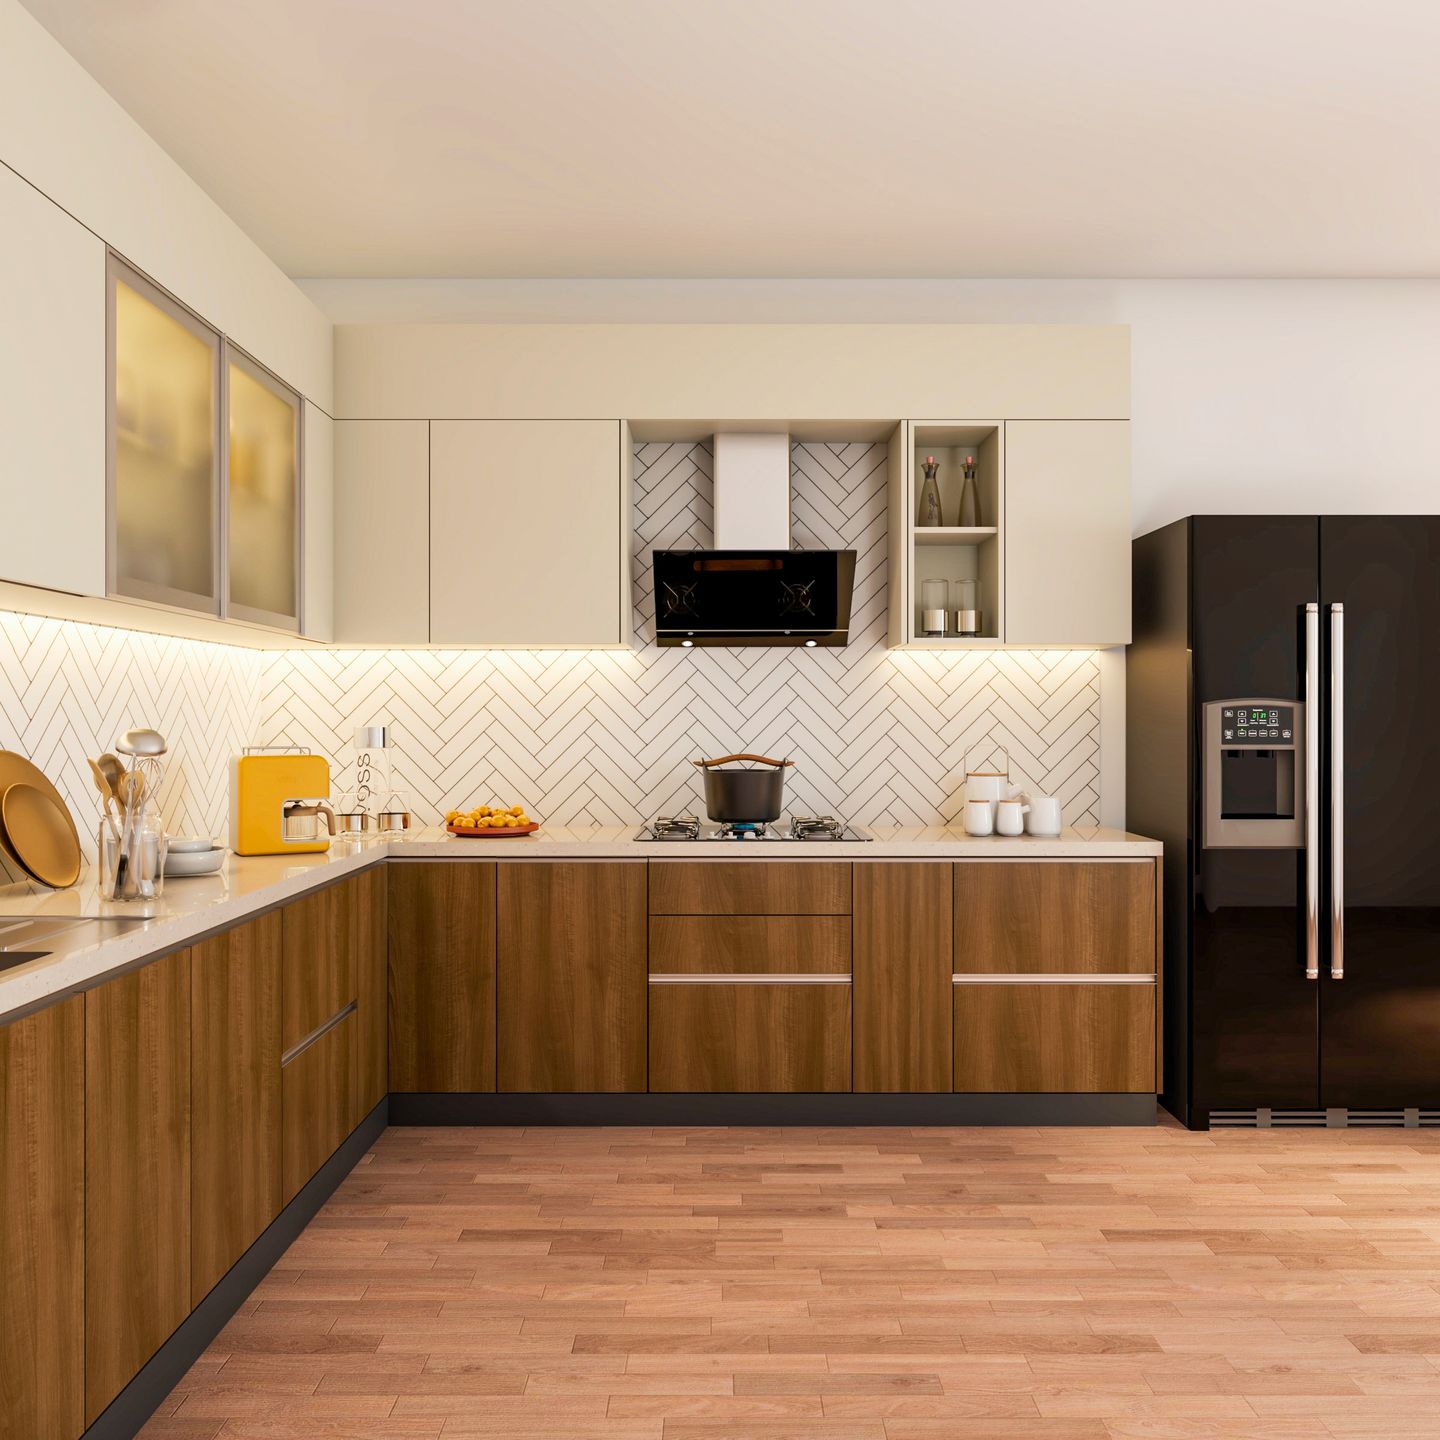 Modern Low-Maintenance Kitchen Design With Wooden Flooring | Livspace